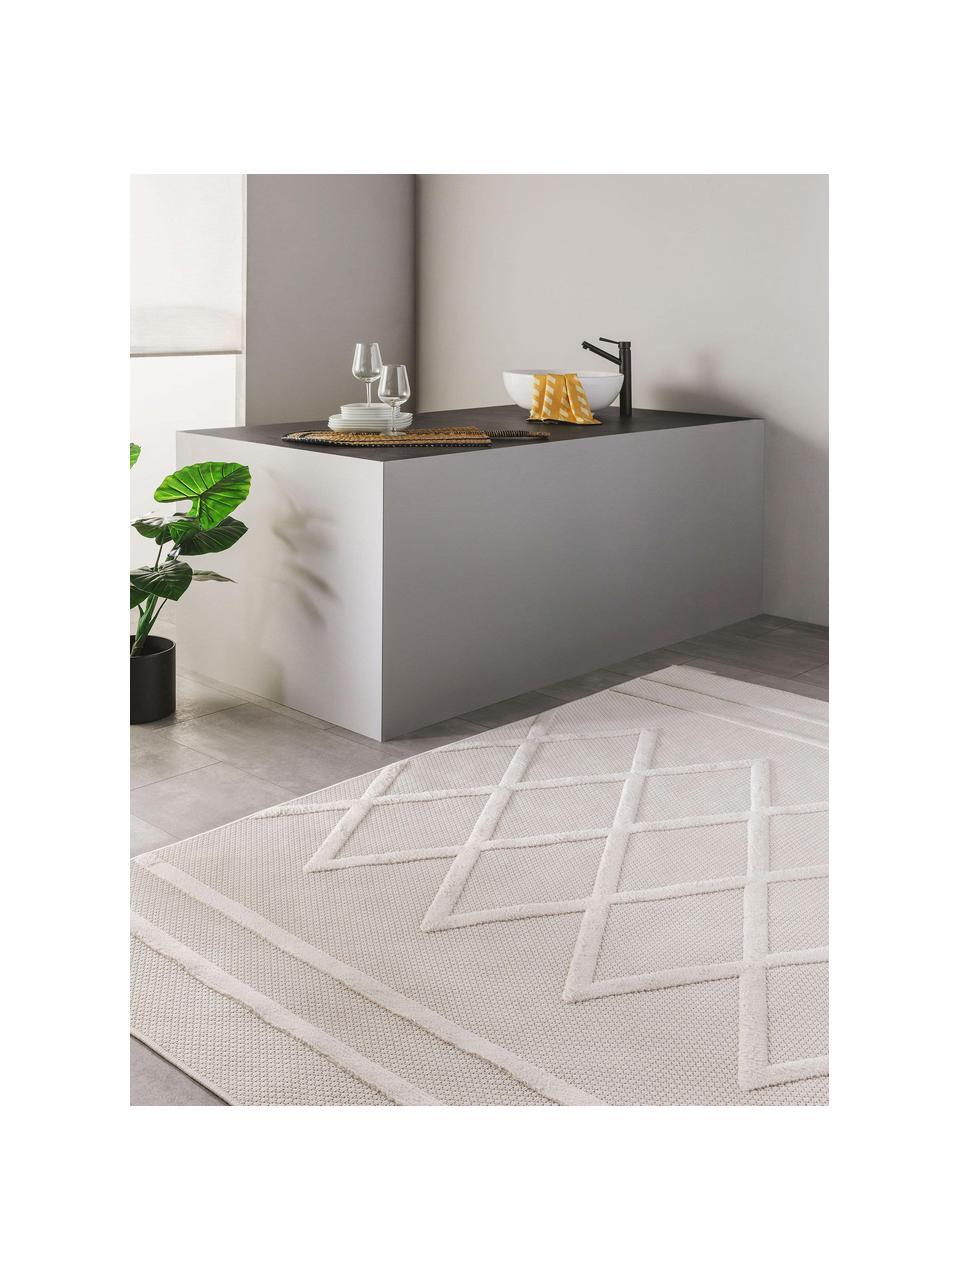 Handgewebter In- & Outdoor-Teppich Bonte mit Hoch-Tief-Effekt, 100 %  Polypropylen, Cremeweiss, B 120 x L 170 cm (Grösse S)